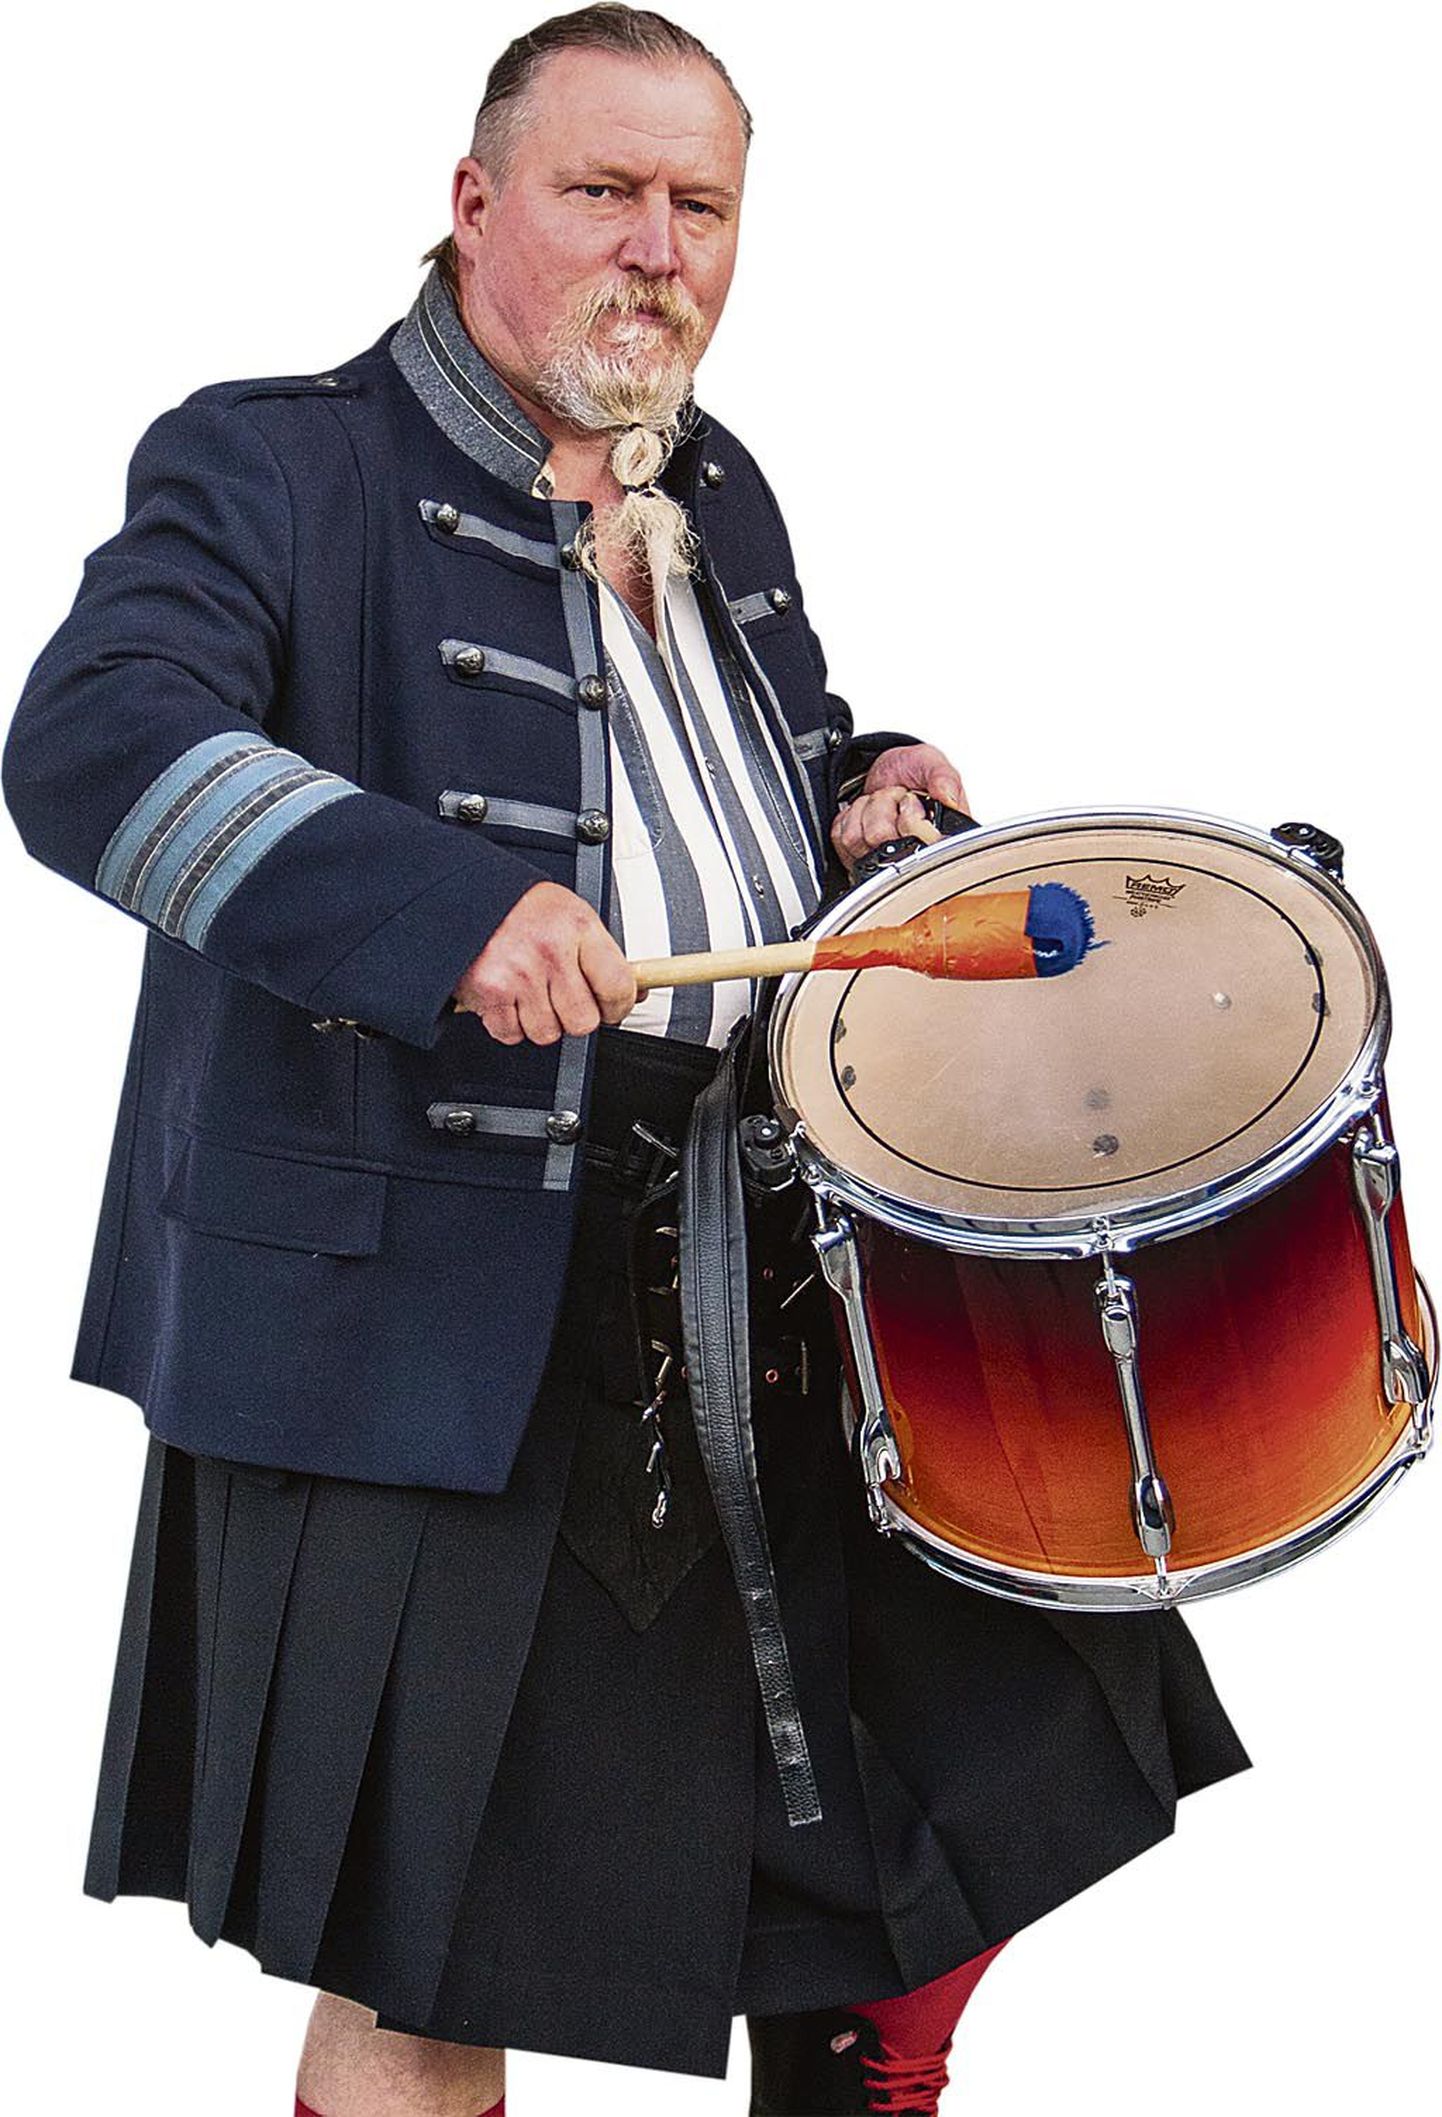 Muusik ja spordisõber Olavi Kõrre omas elemendis jalgpallimatšil trummi löömas.